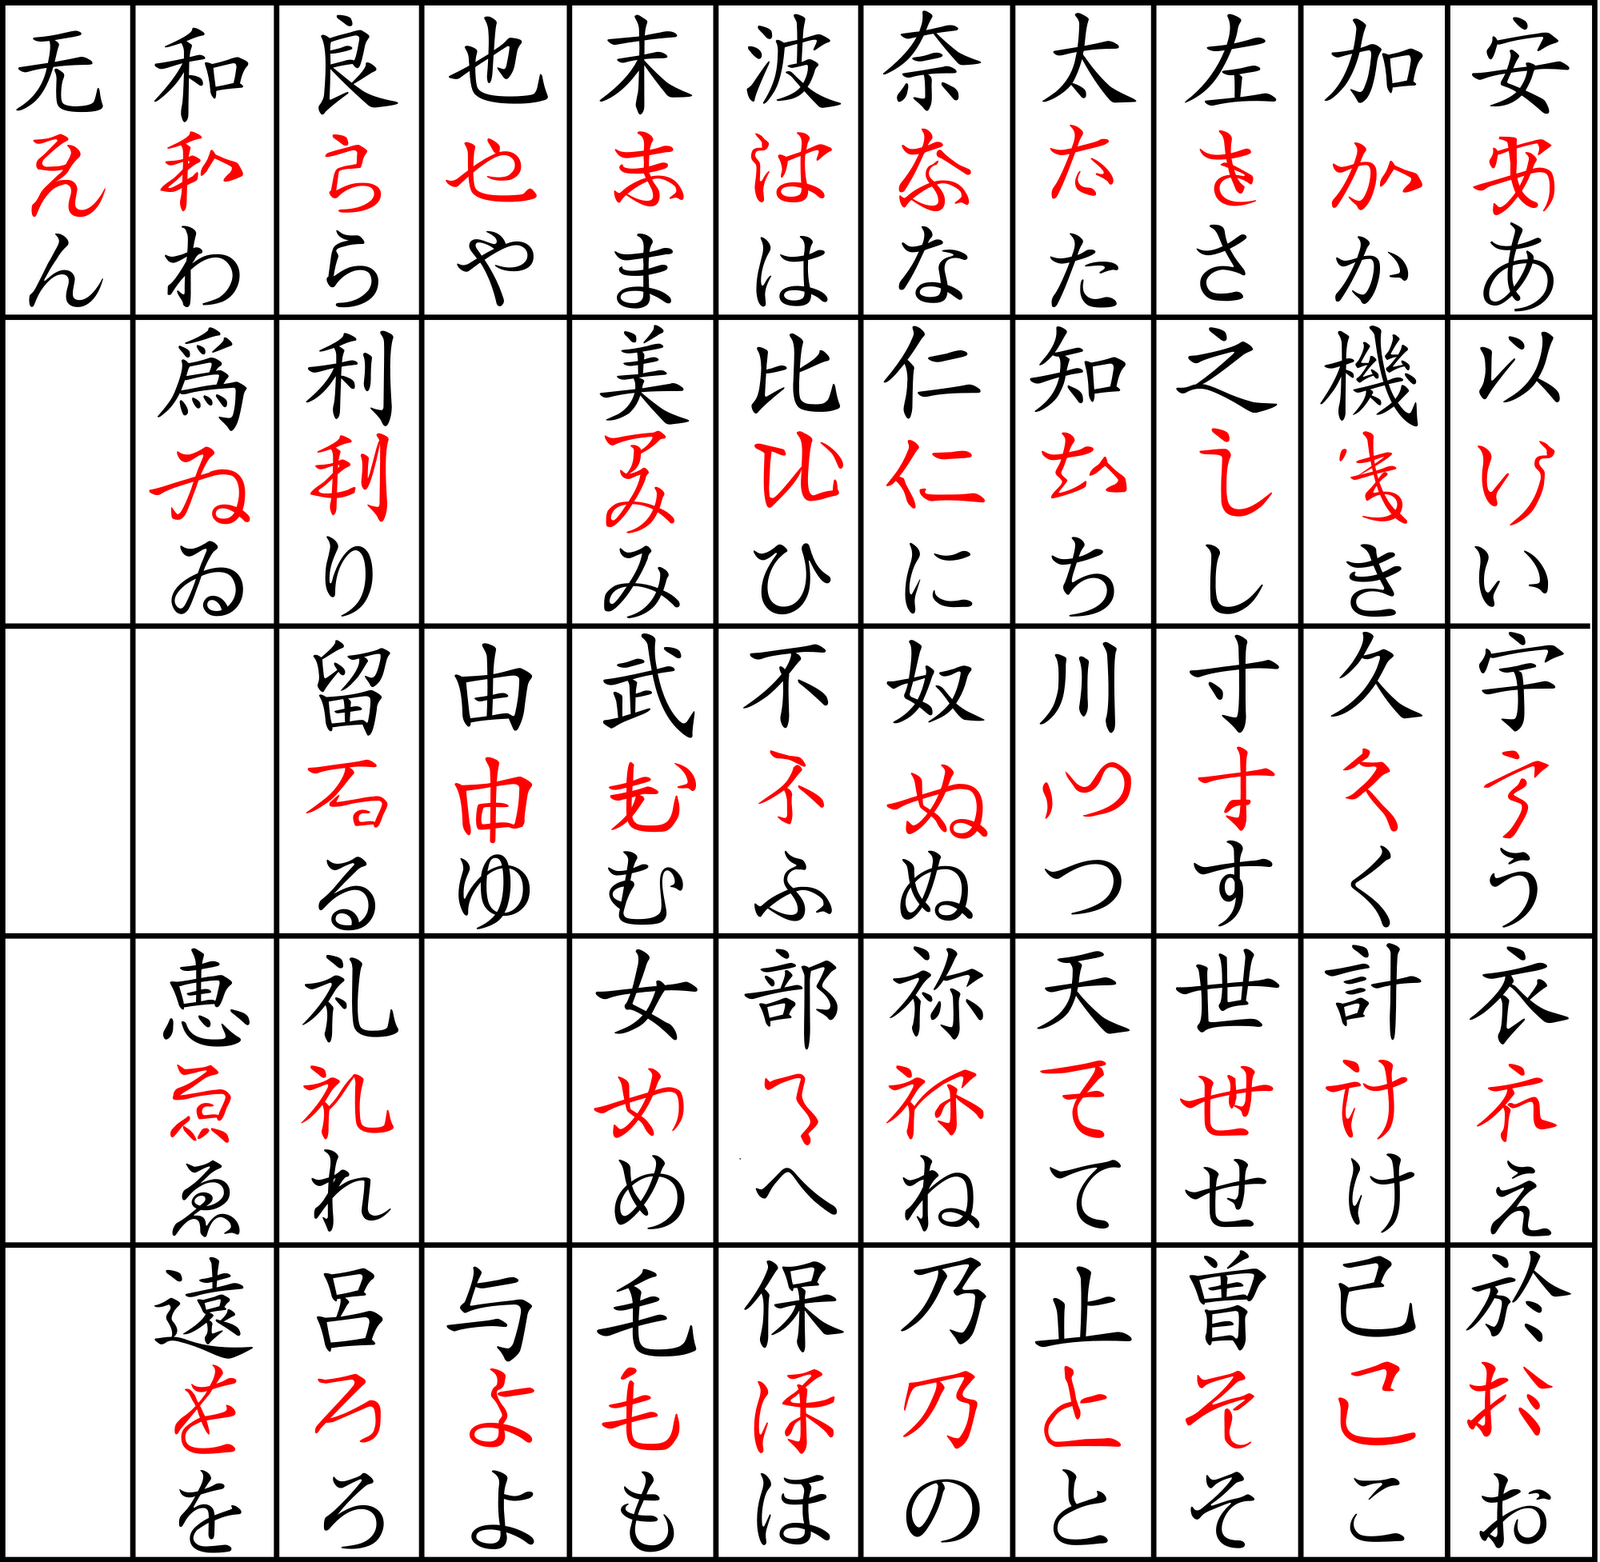 Lebih lanjut Takabe menekankan bahwa dalam penggunaan kanji tidak dapat sembarangan tetapi harus mengutamakan pada arti masing masing kanji karena hal